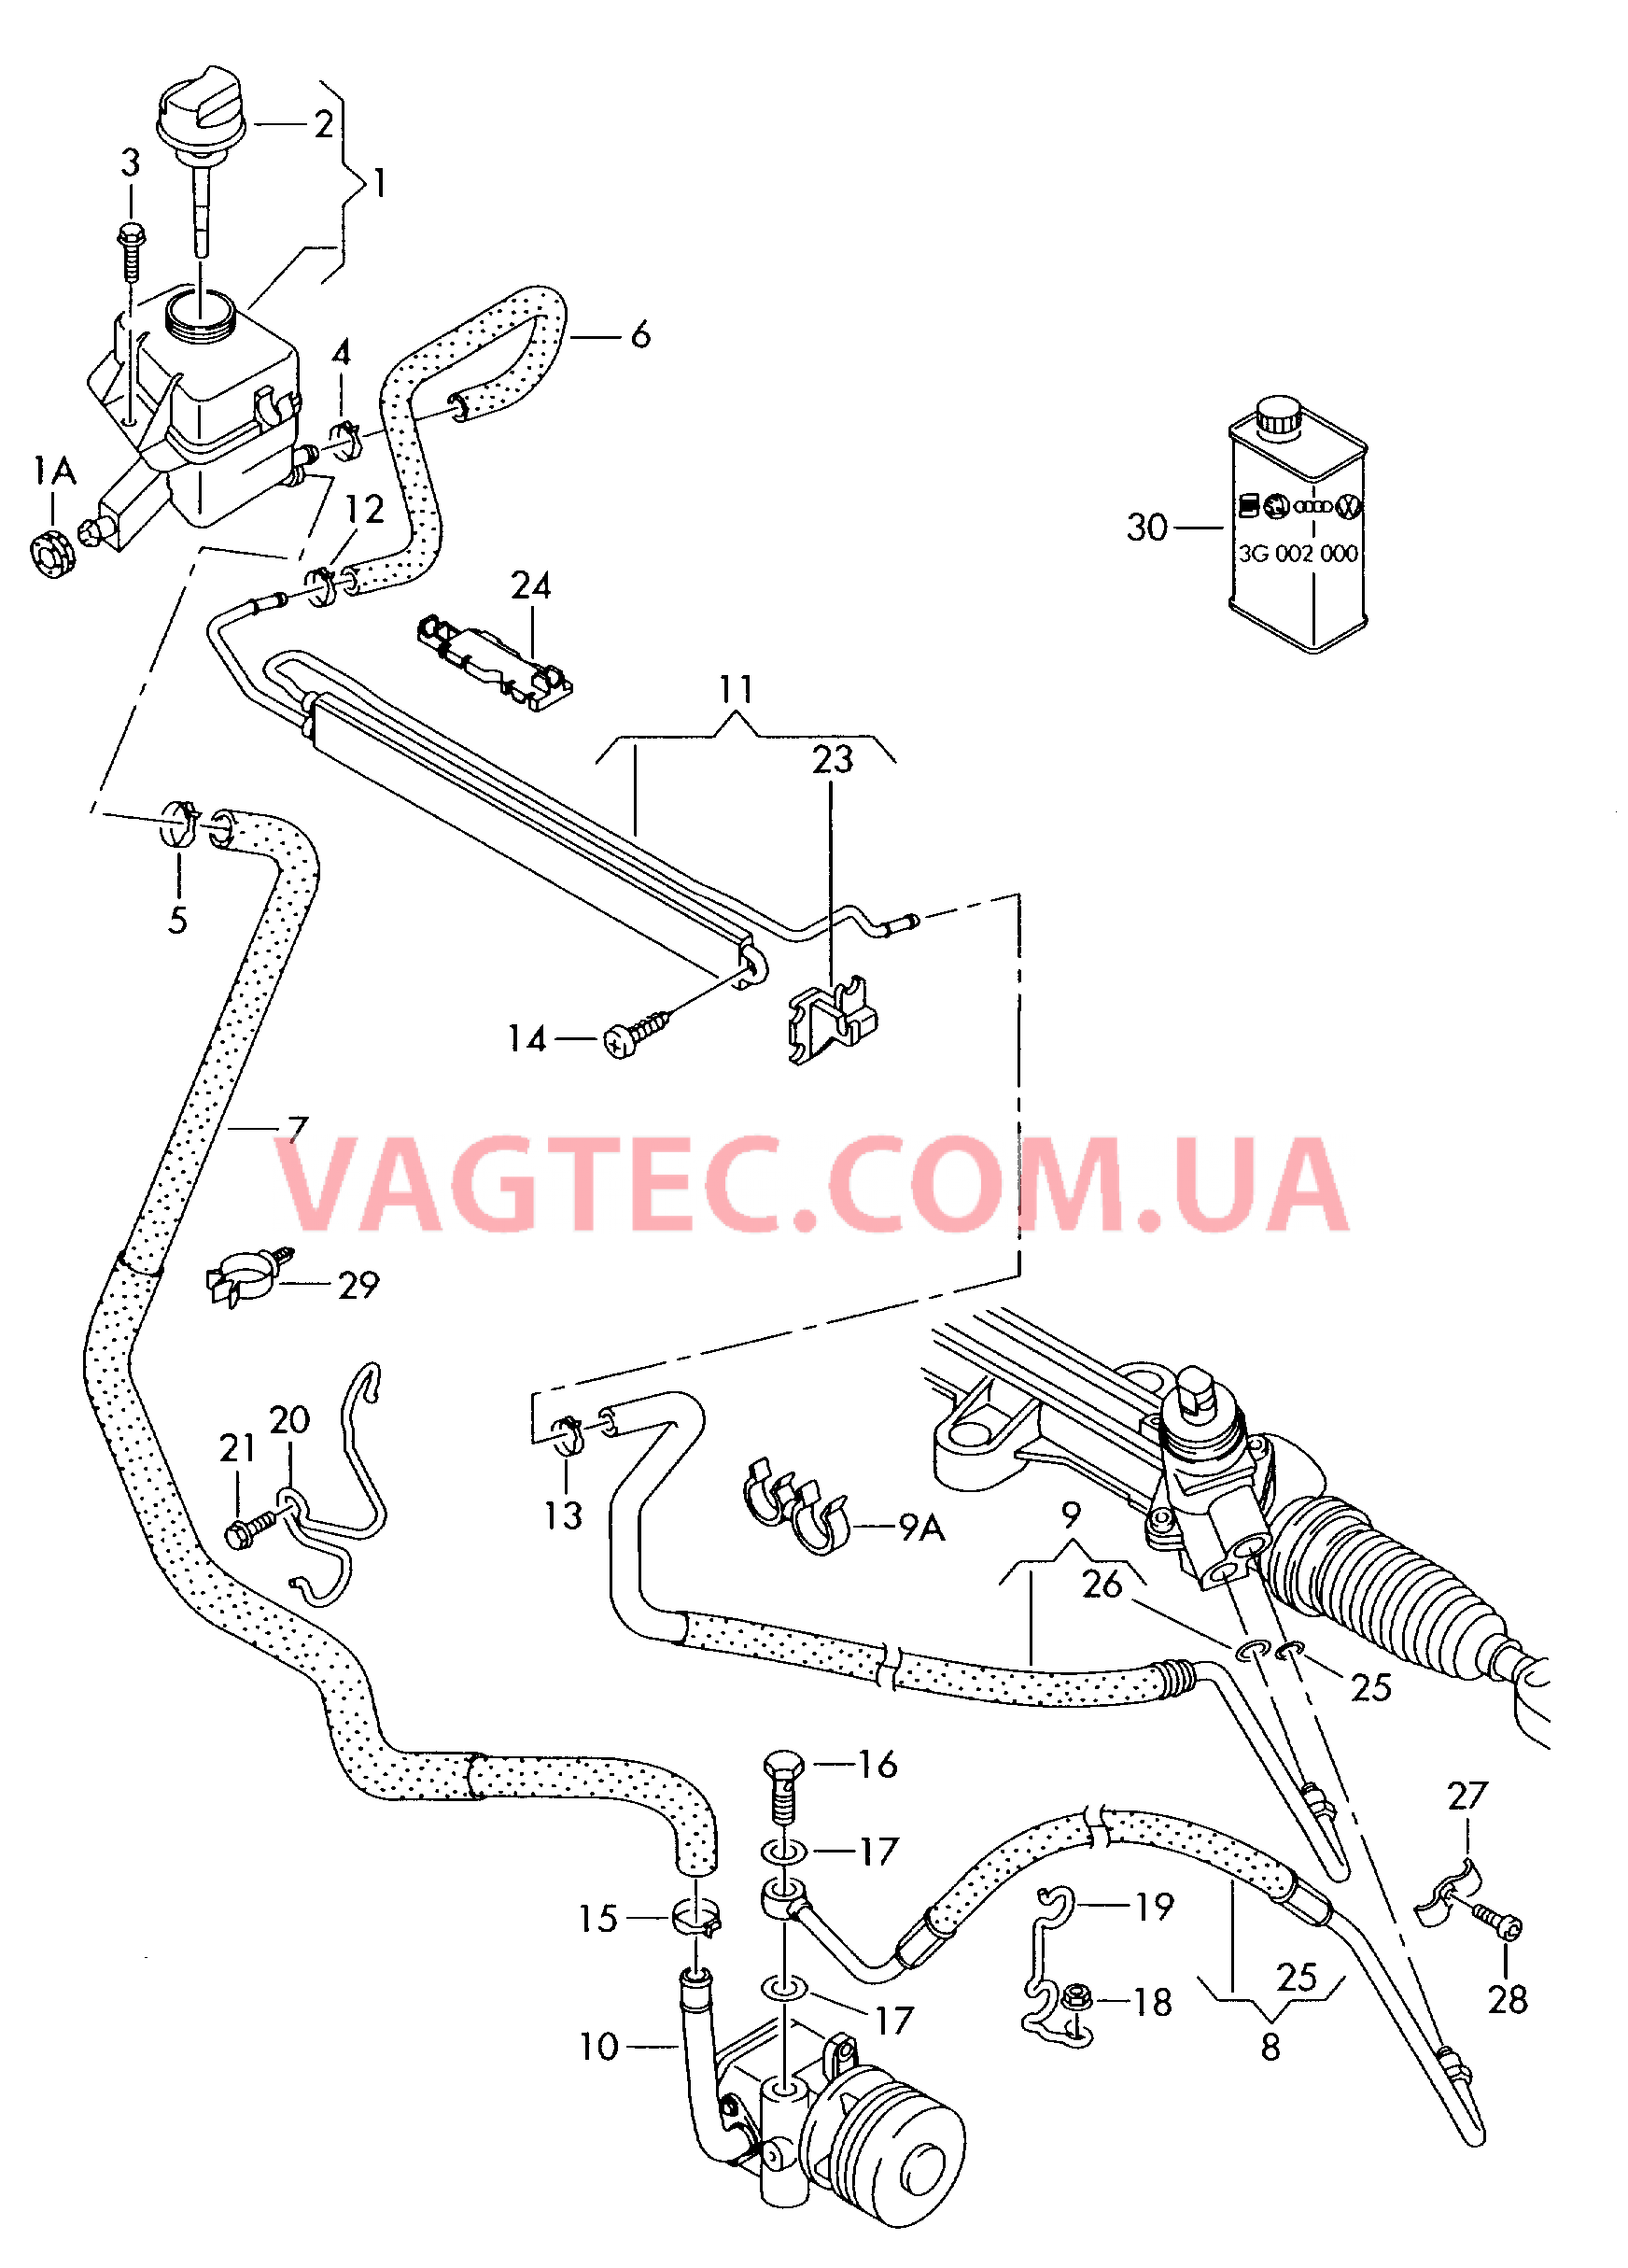 Масляный бачок с соединительными деталями, шлангами  для ГУРа  для VOLKSWAGEN Transporter 2009-1